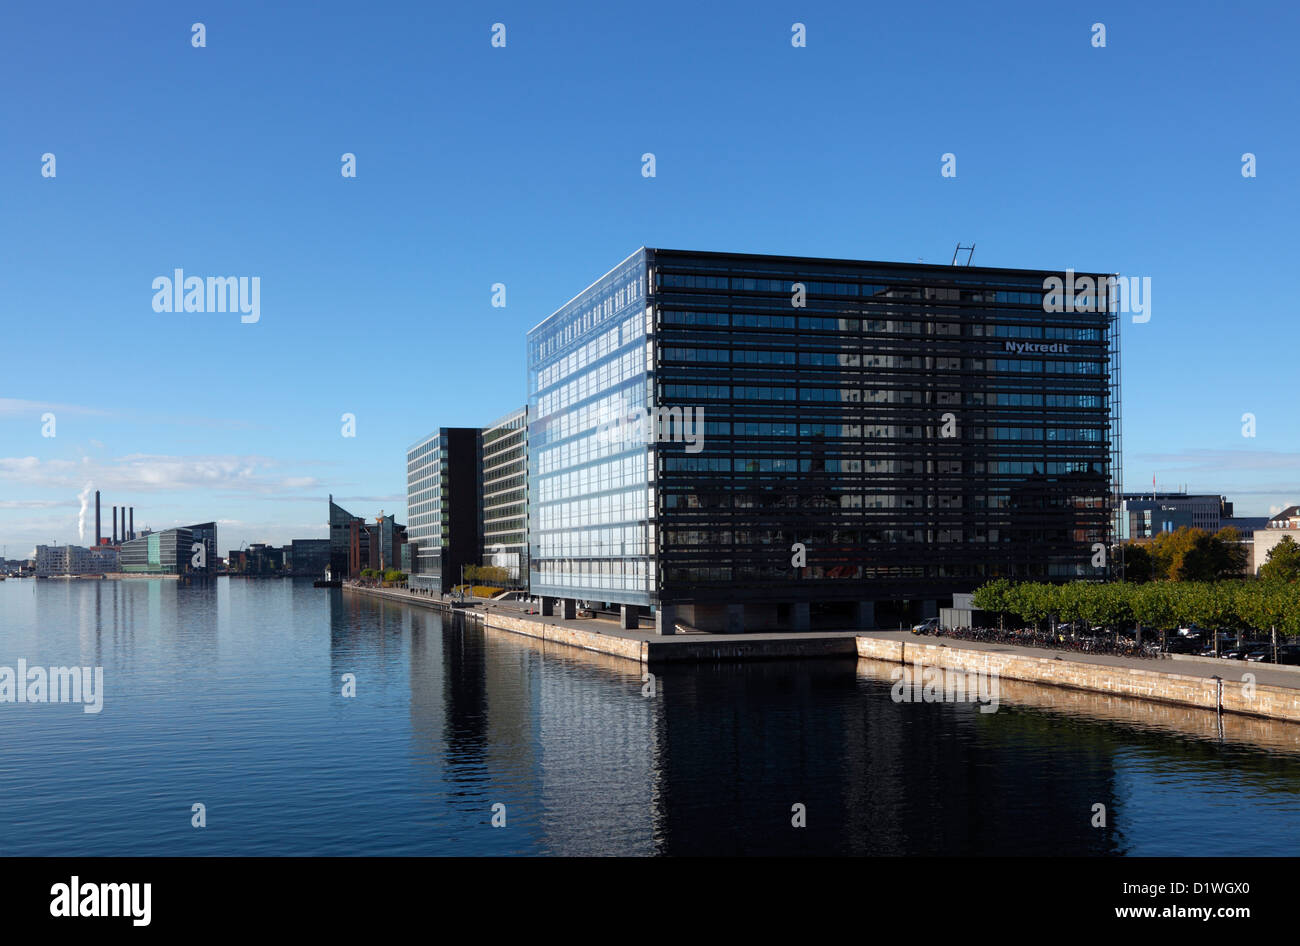 El puerto de Copenhague, el instituto de crédito hipotecario y el banco NYKREDIT edificio que refleja el Danhostel en la fachada de vidrio. Foto de stock